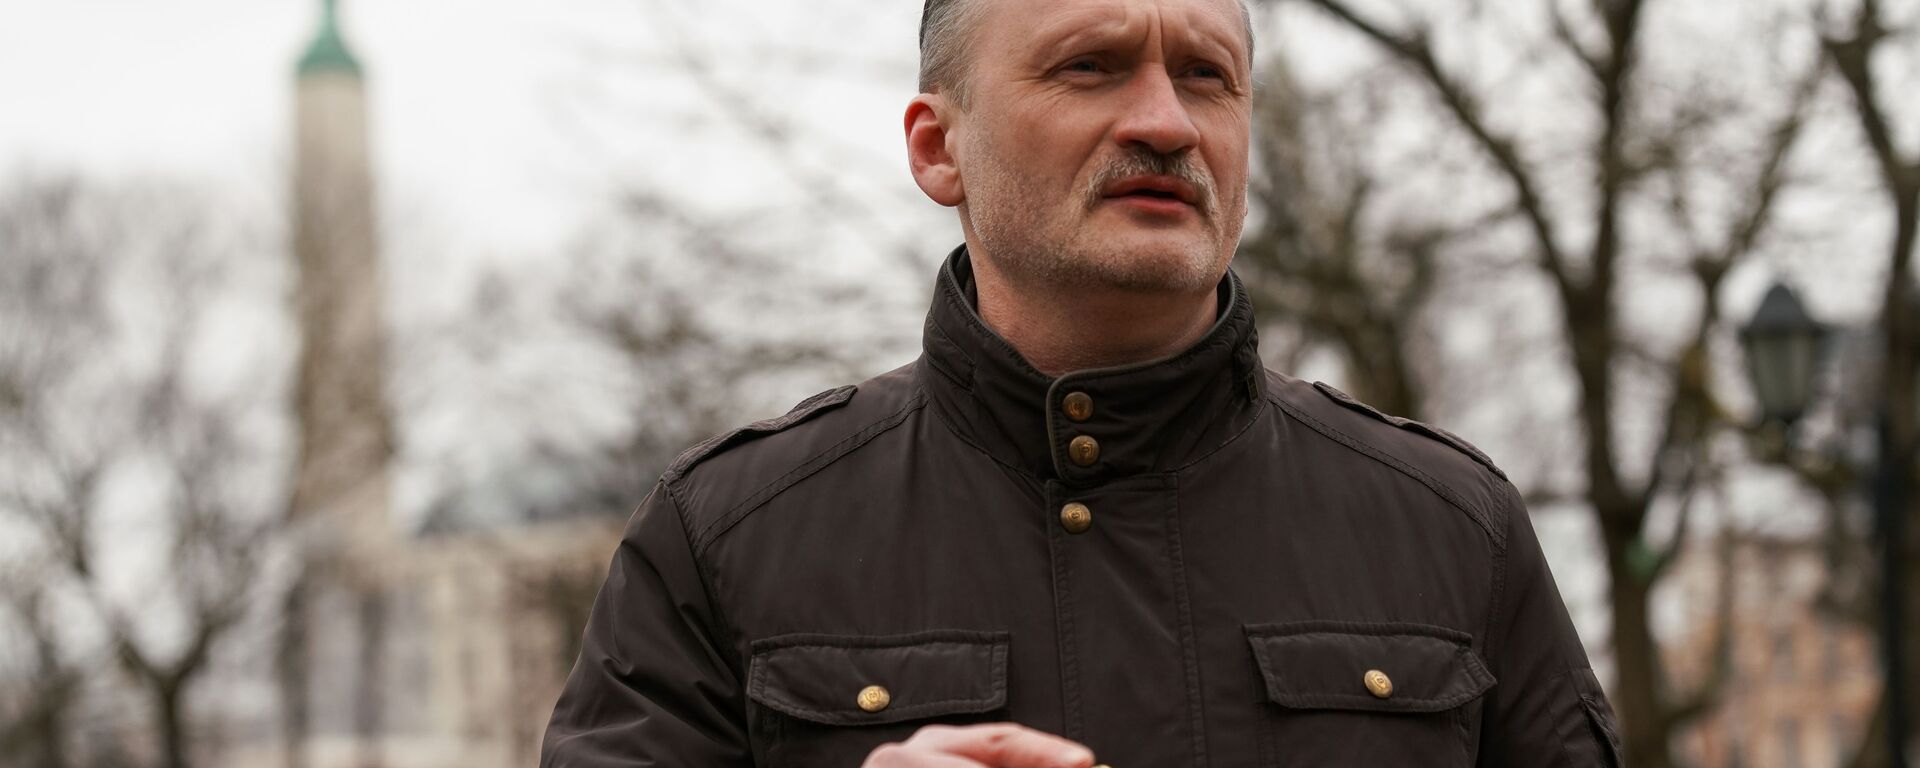 Сопредседатель РСЛ Мирослав Митрофанов (в центре) возле памятника Свободы в Риге 16 марта 2020 года - Sputnik Латвия, 1920, 02.02.2021